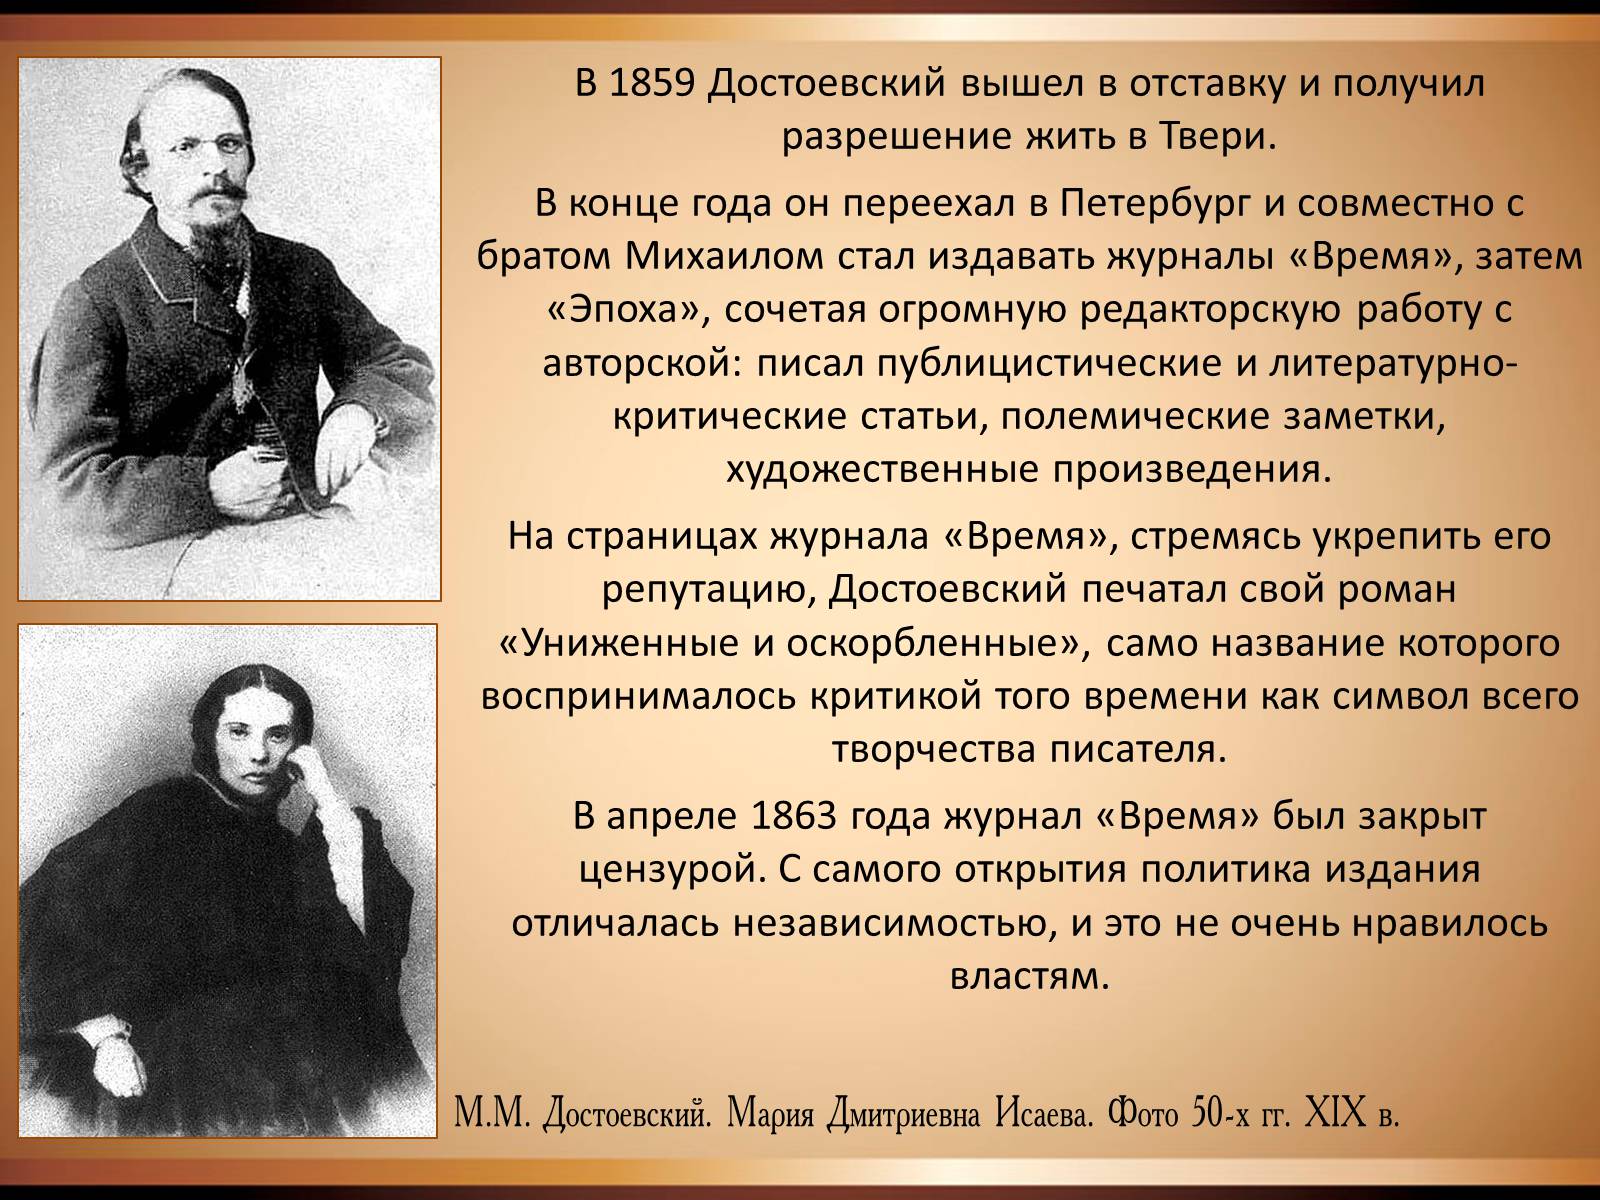 Достоевский презентация 9. Достоевский 1859 год.